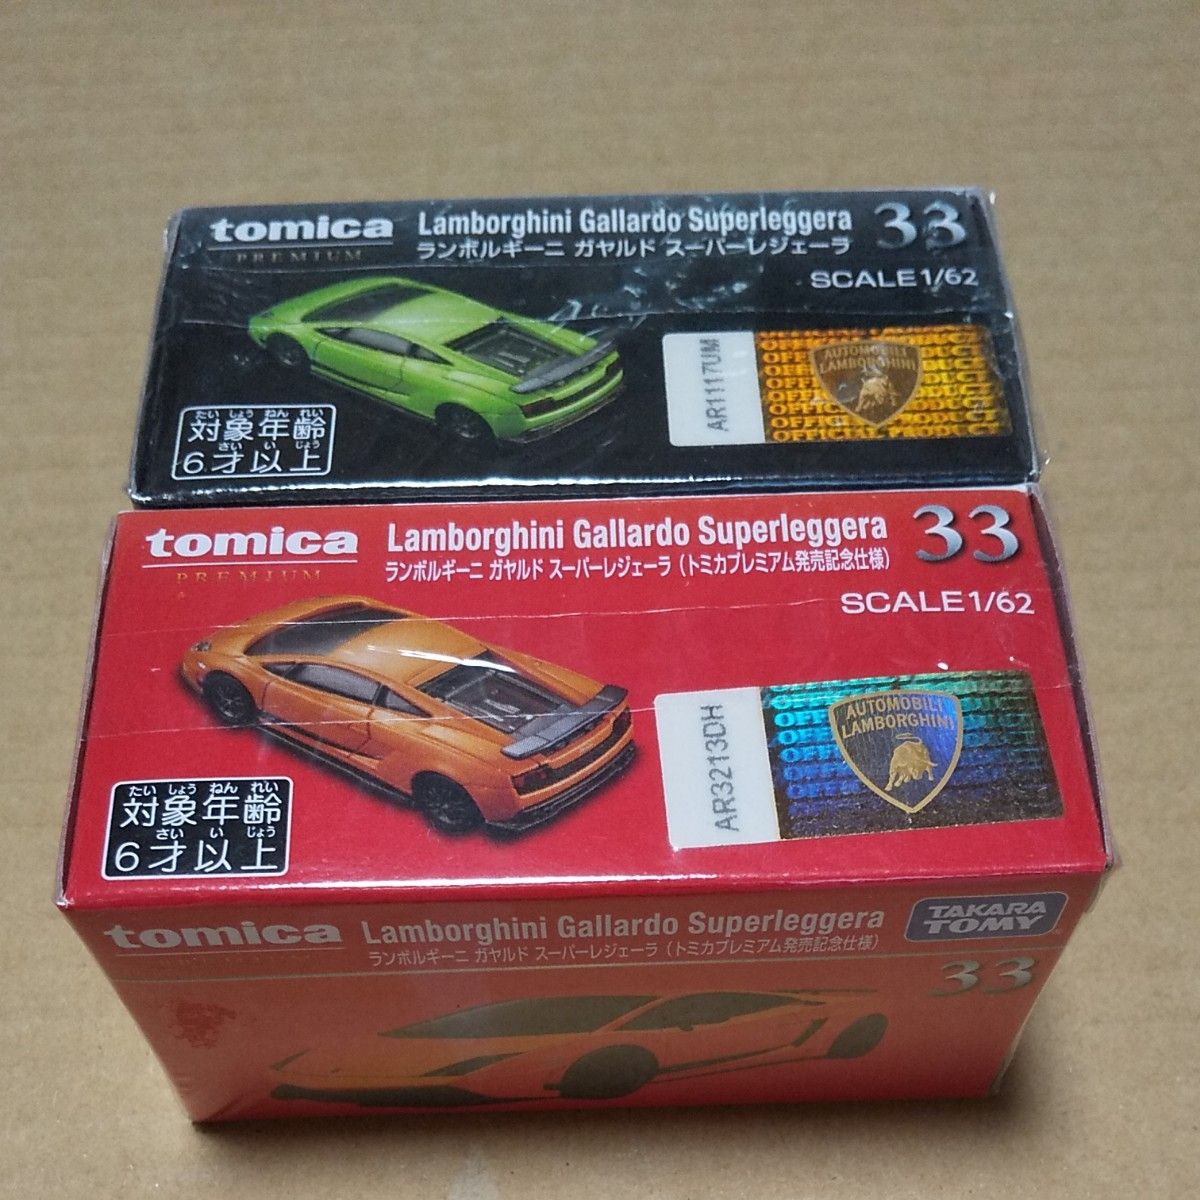 トミカプレミアム ランボルギーニ ガヤルド スーパーレジェーラ(発売記念仕様)含む 2台セット